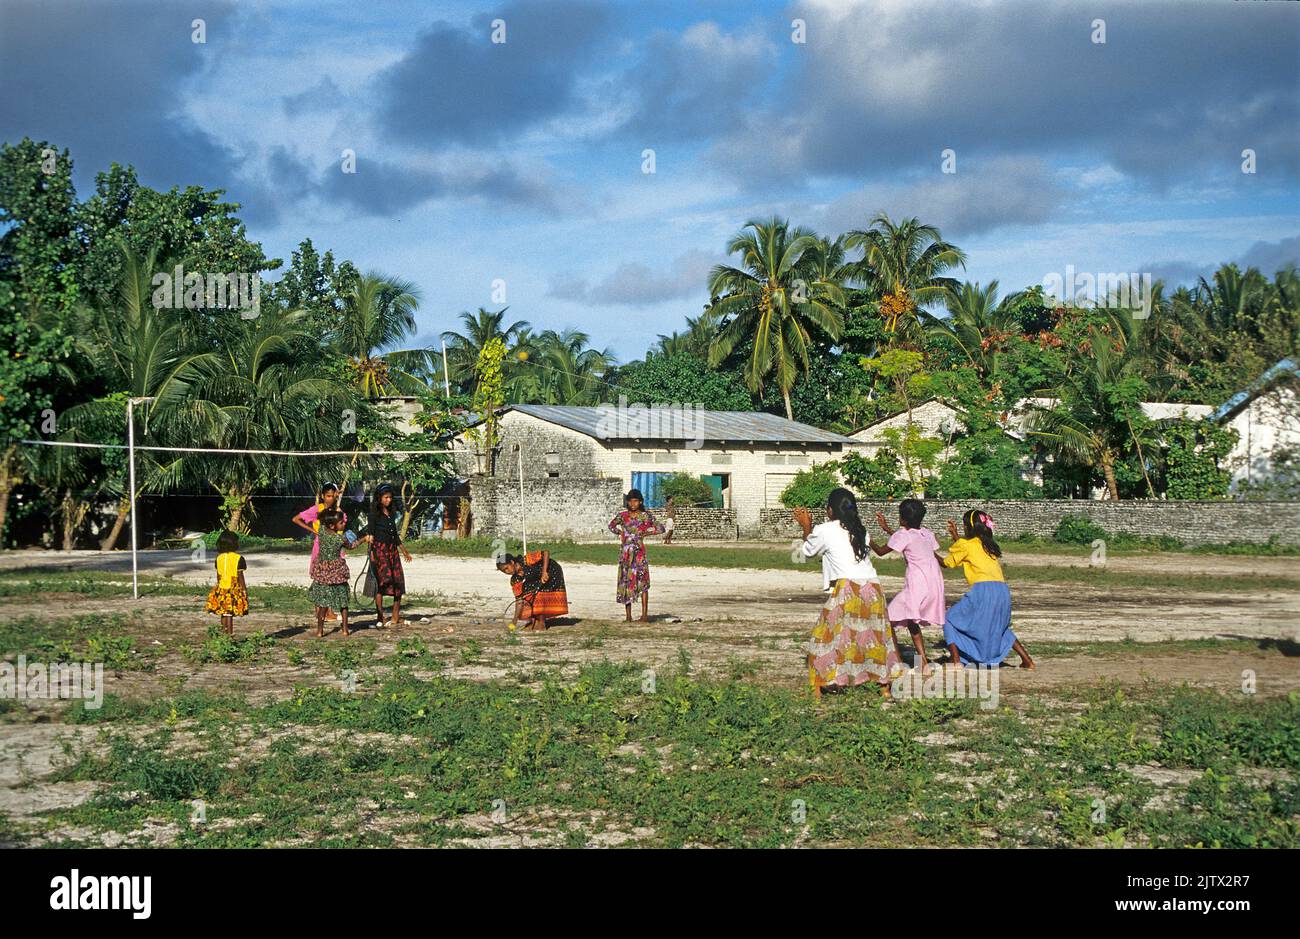 Jeunes filles jouant avec un ballon, île d'accueil Mahembadhoo, Maldives, océan Indien, Asie Banque D'Images